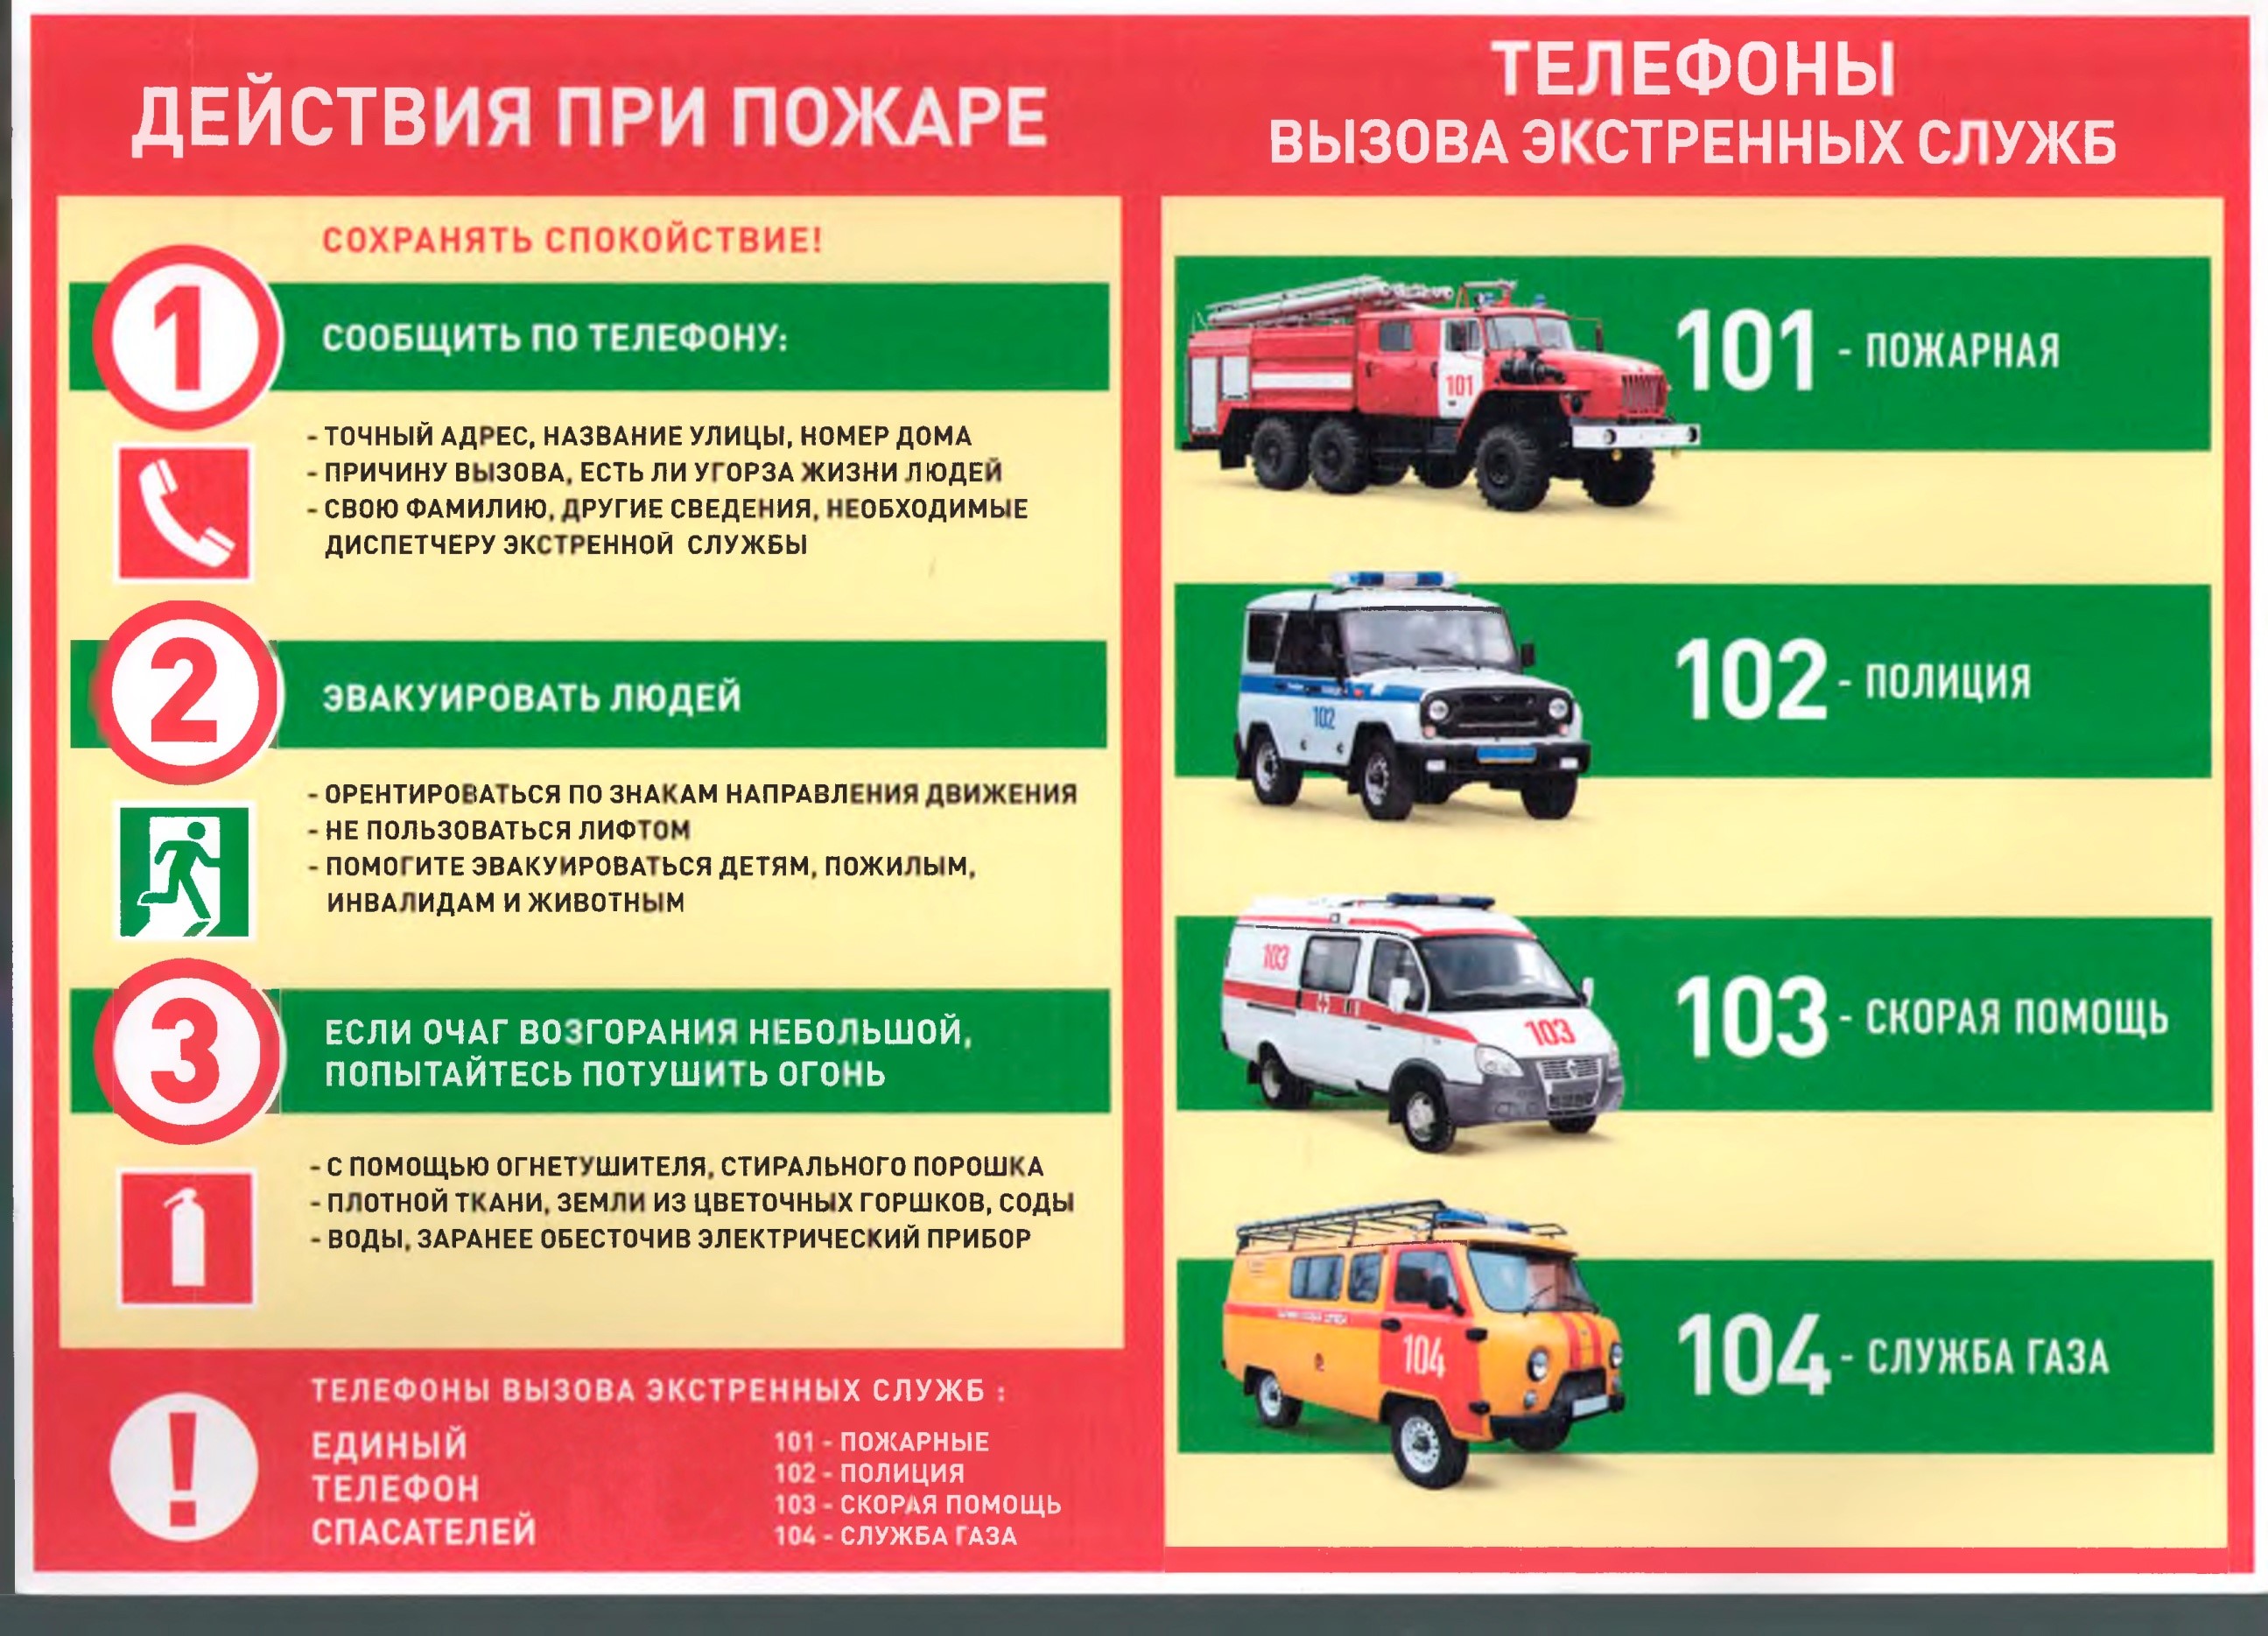 Памятки по пожарной безопасности МЧС России